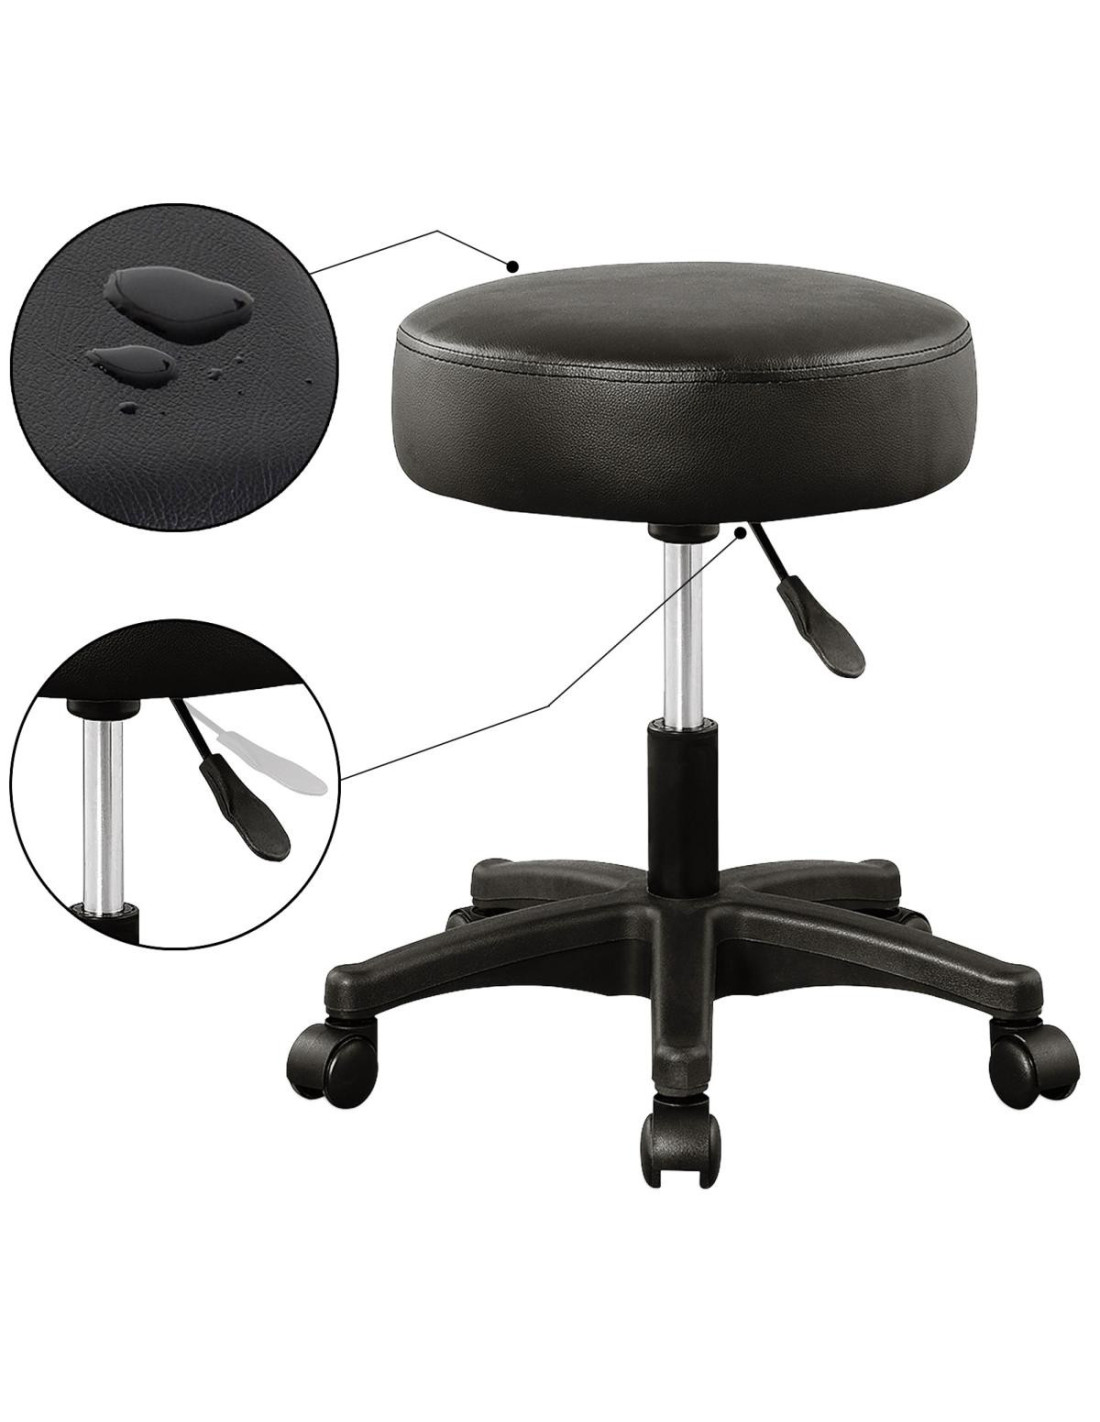 Tabouret de Bureau Tabouret à roulettes Professionnel avec Dossier Rotation  à 360° Chaise a Roulette Hauteur Réglable pour Salon de Massage Cuisine